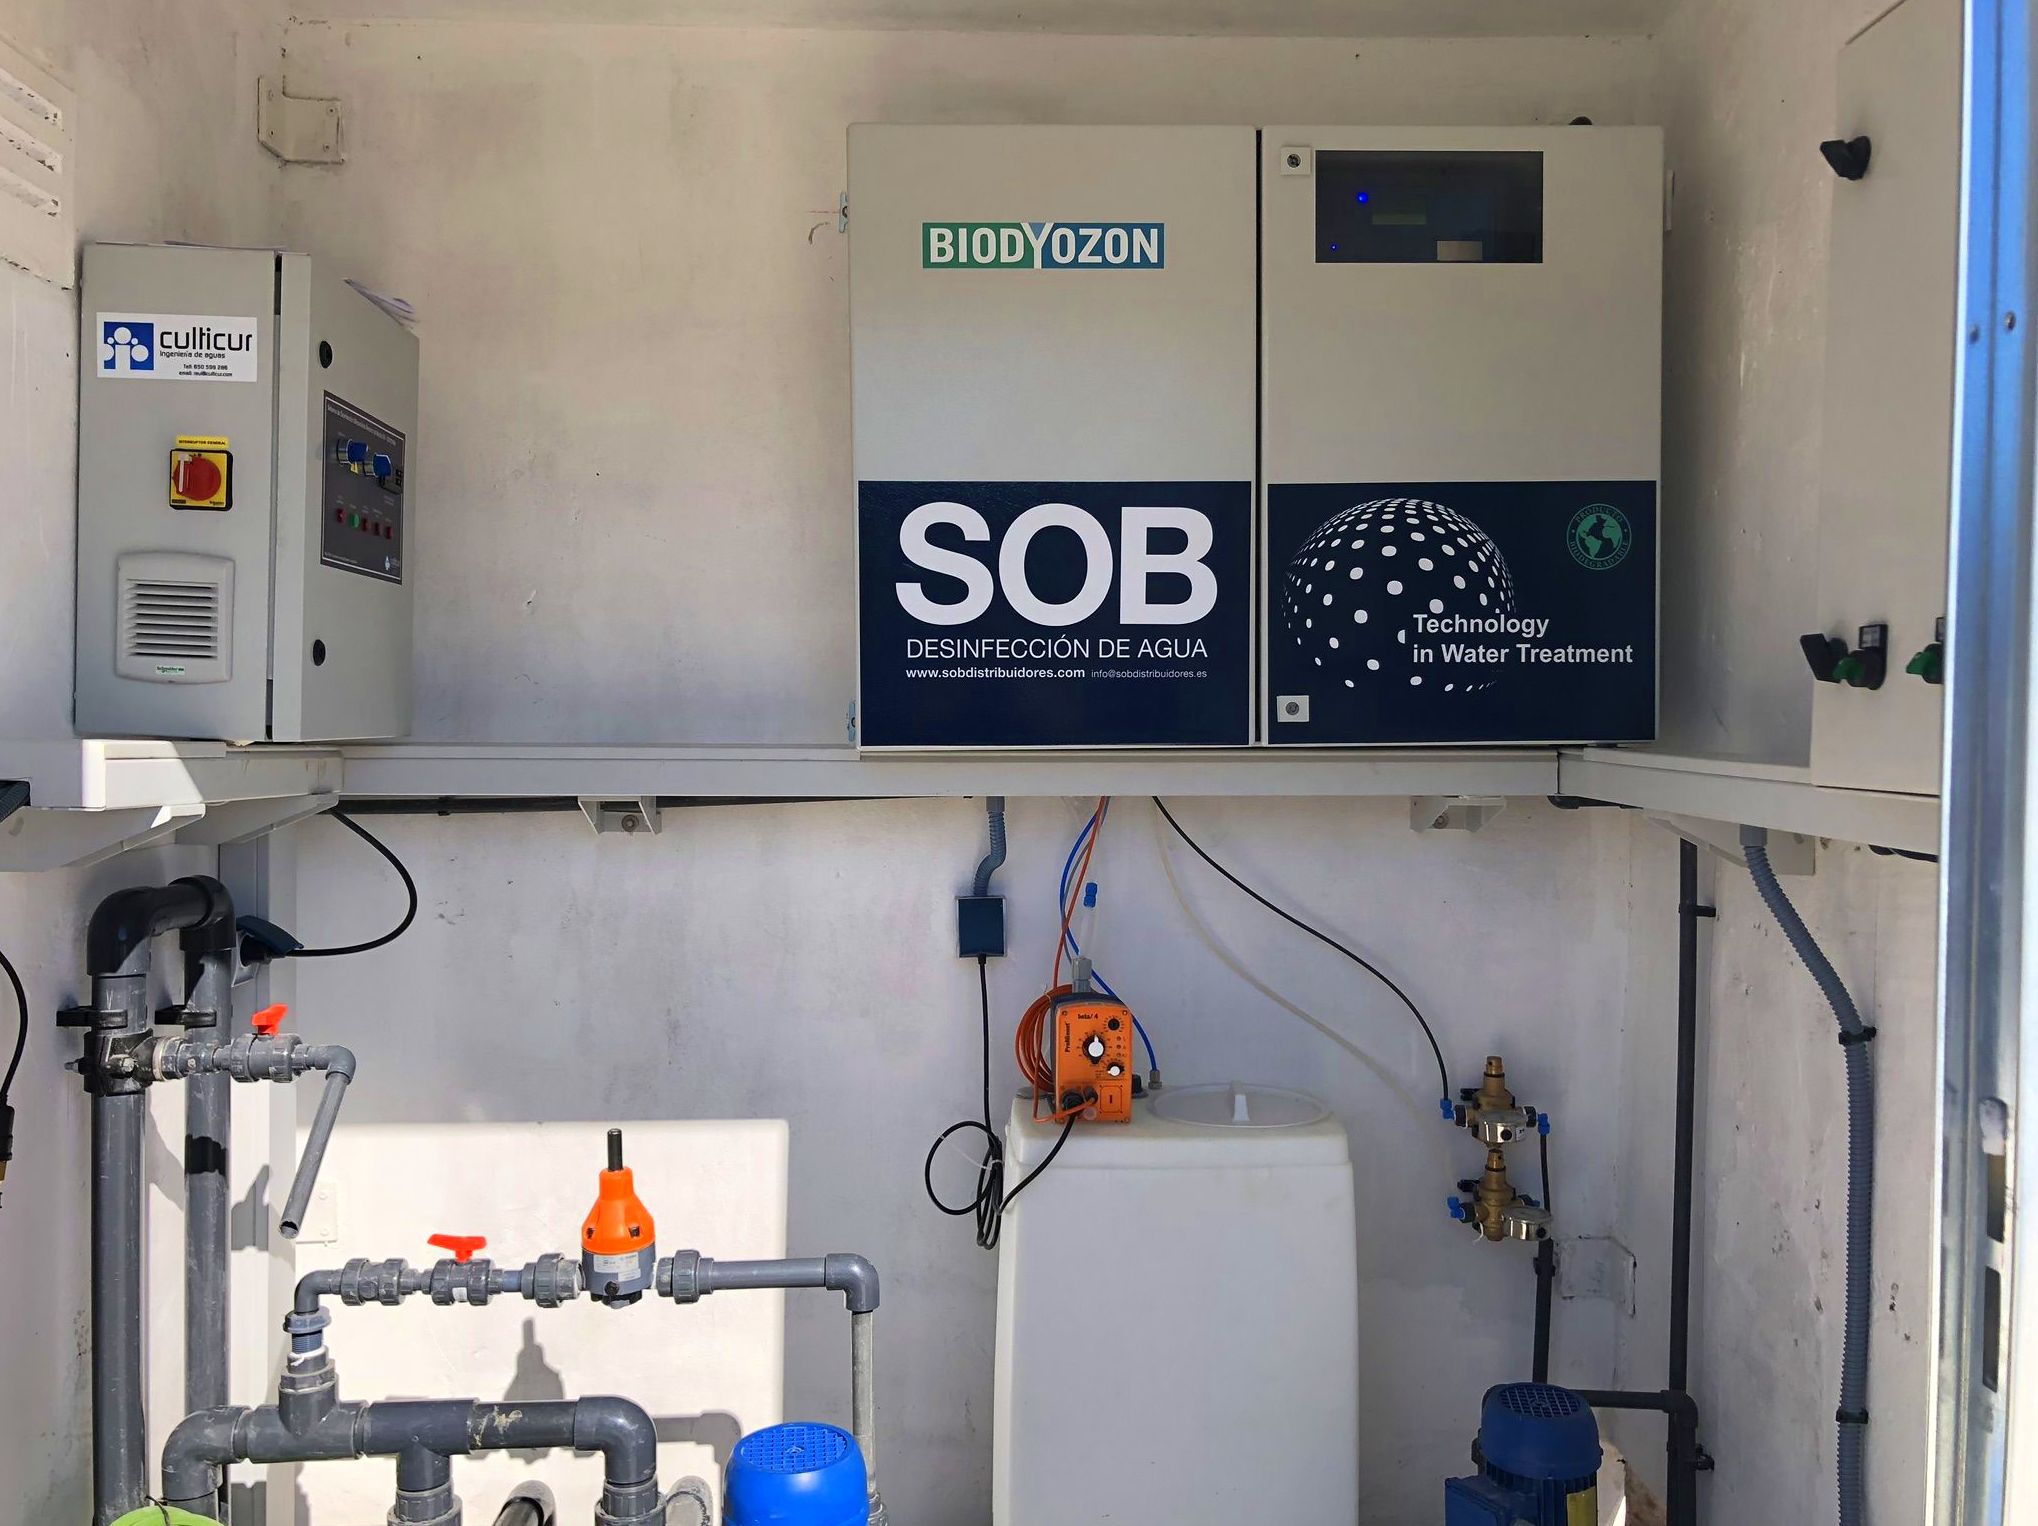 Foto 2 de Desinfección de aguas en Atamaría | SOB Distribuidores